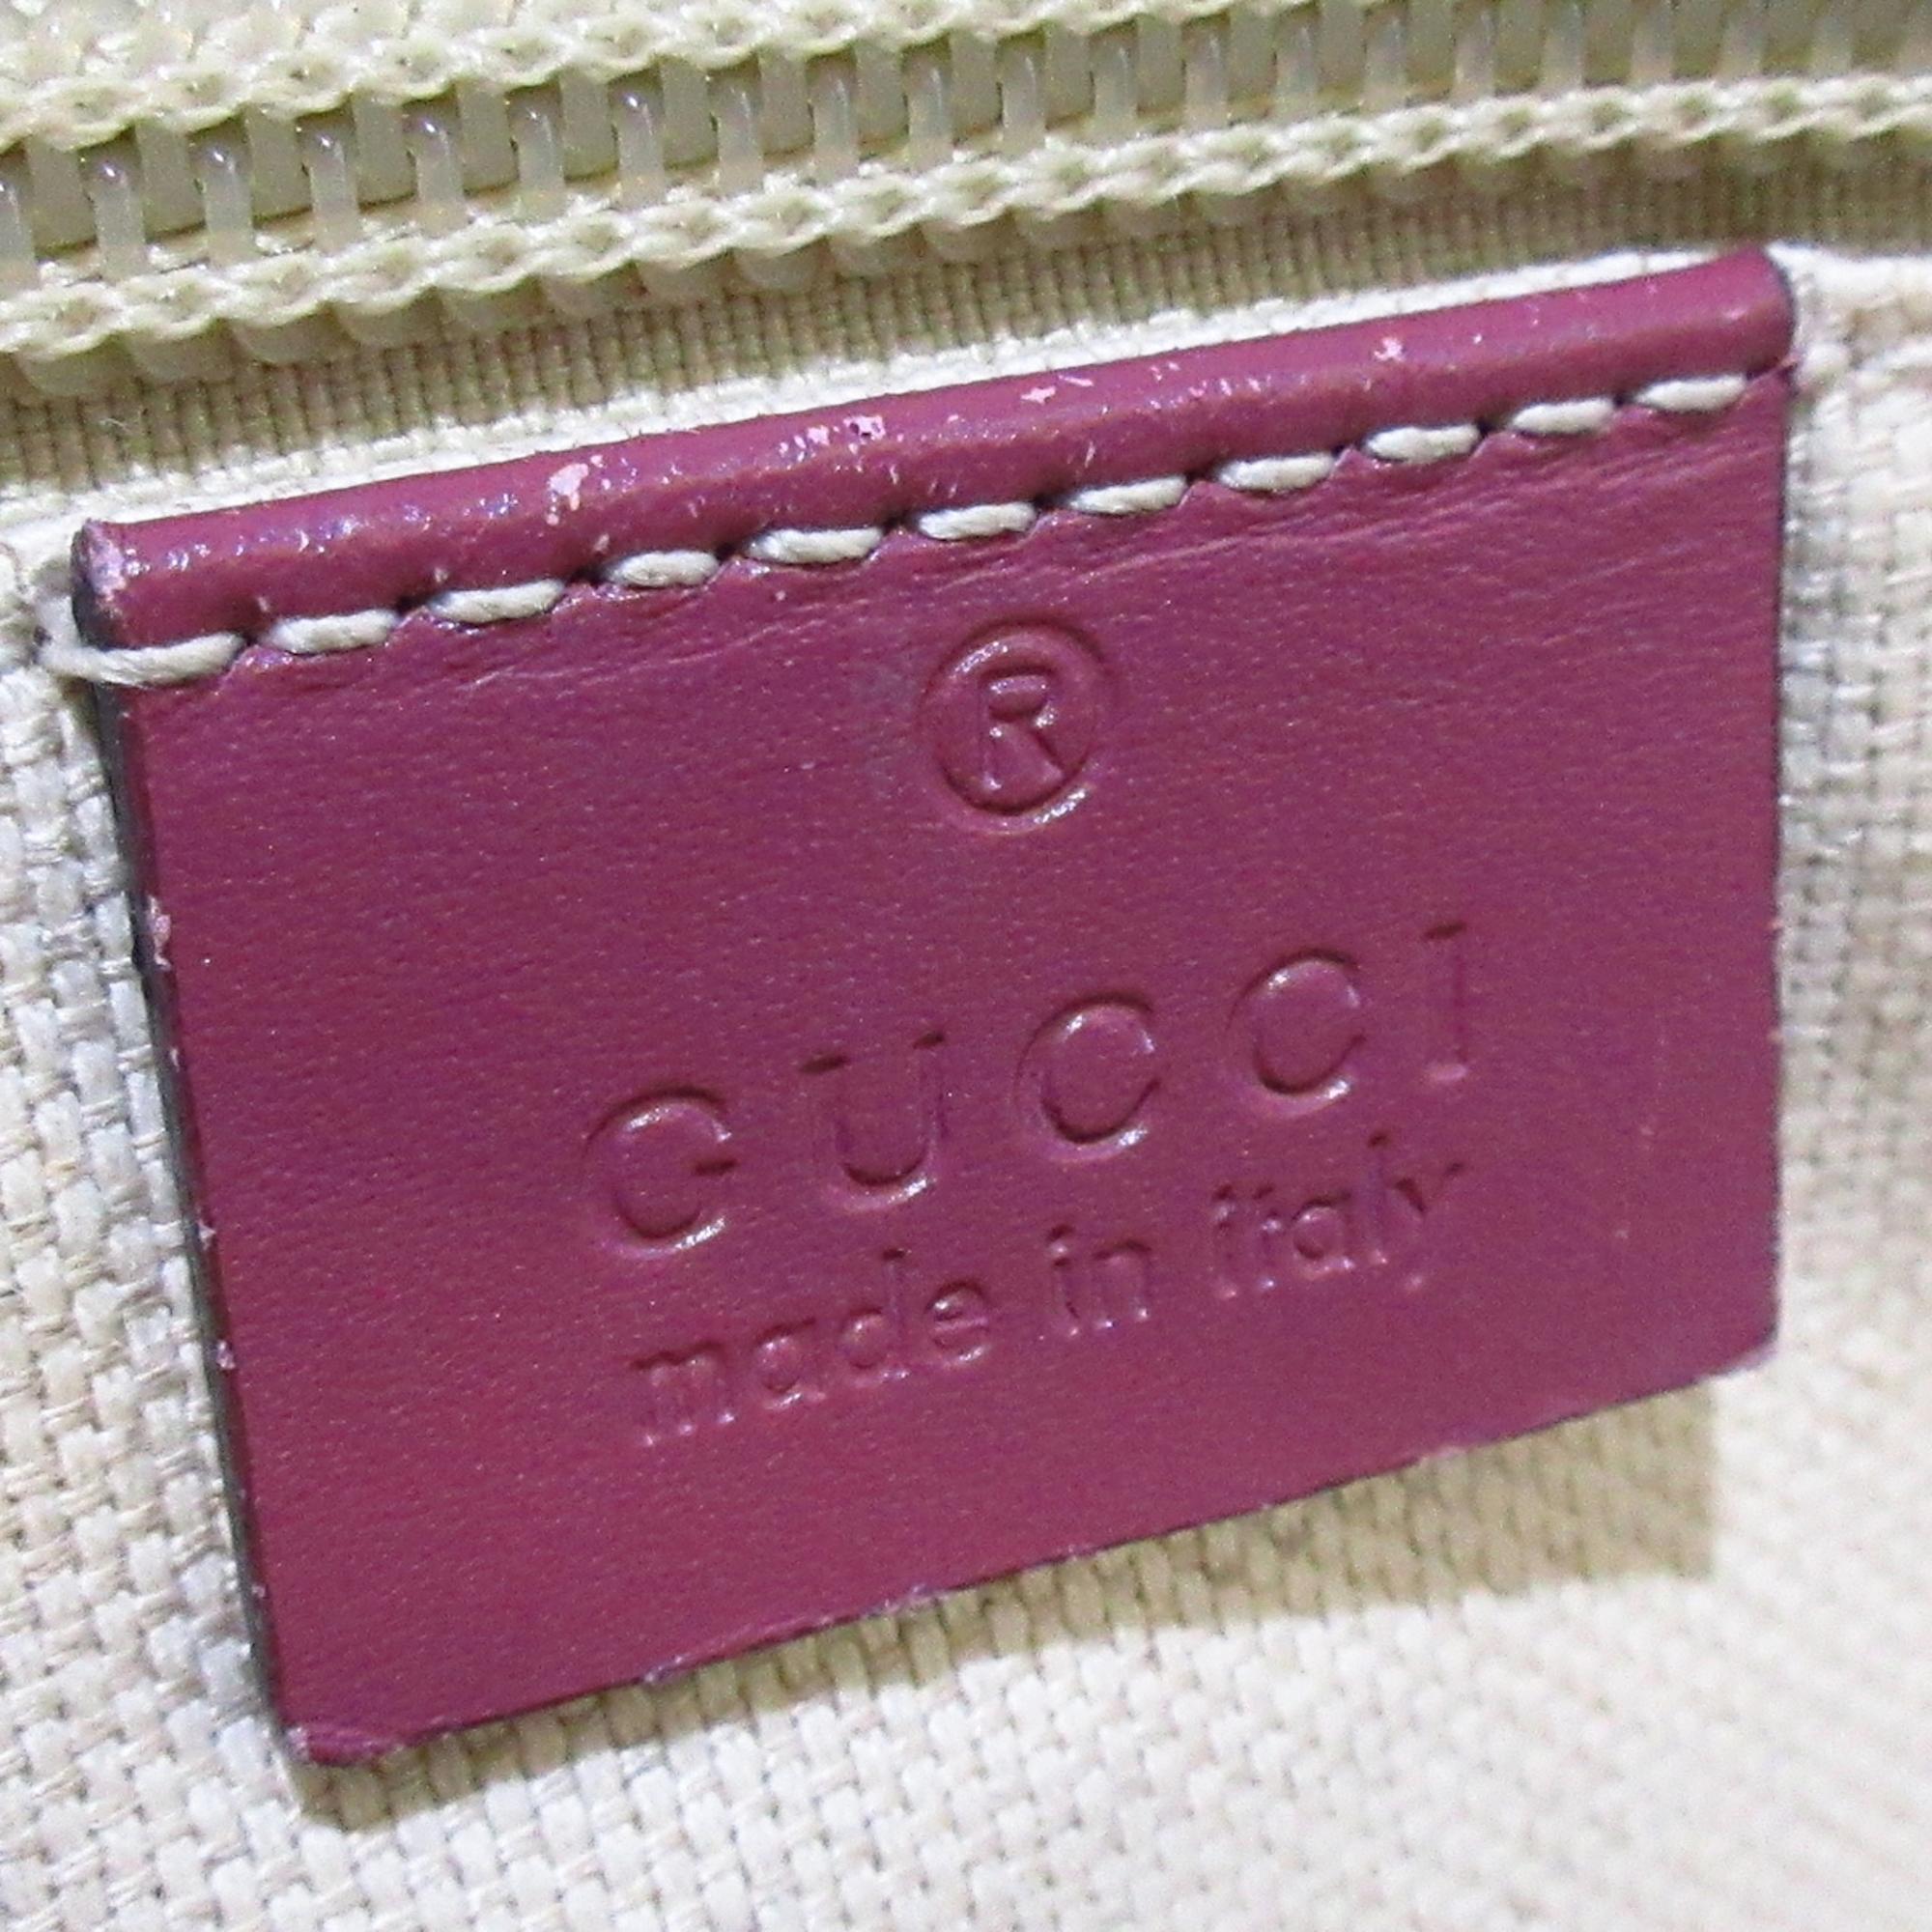 Gucci Beige Canvas GG Supreme Tote Bag